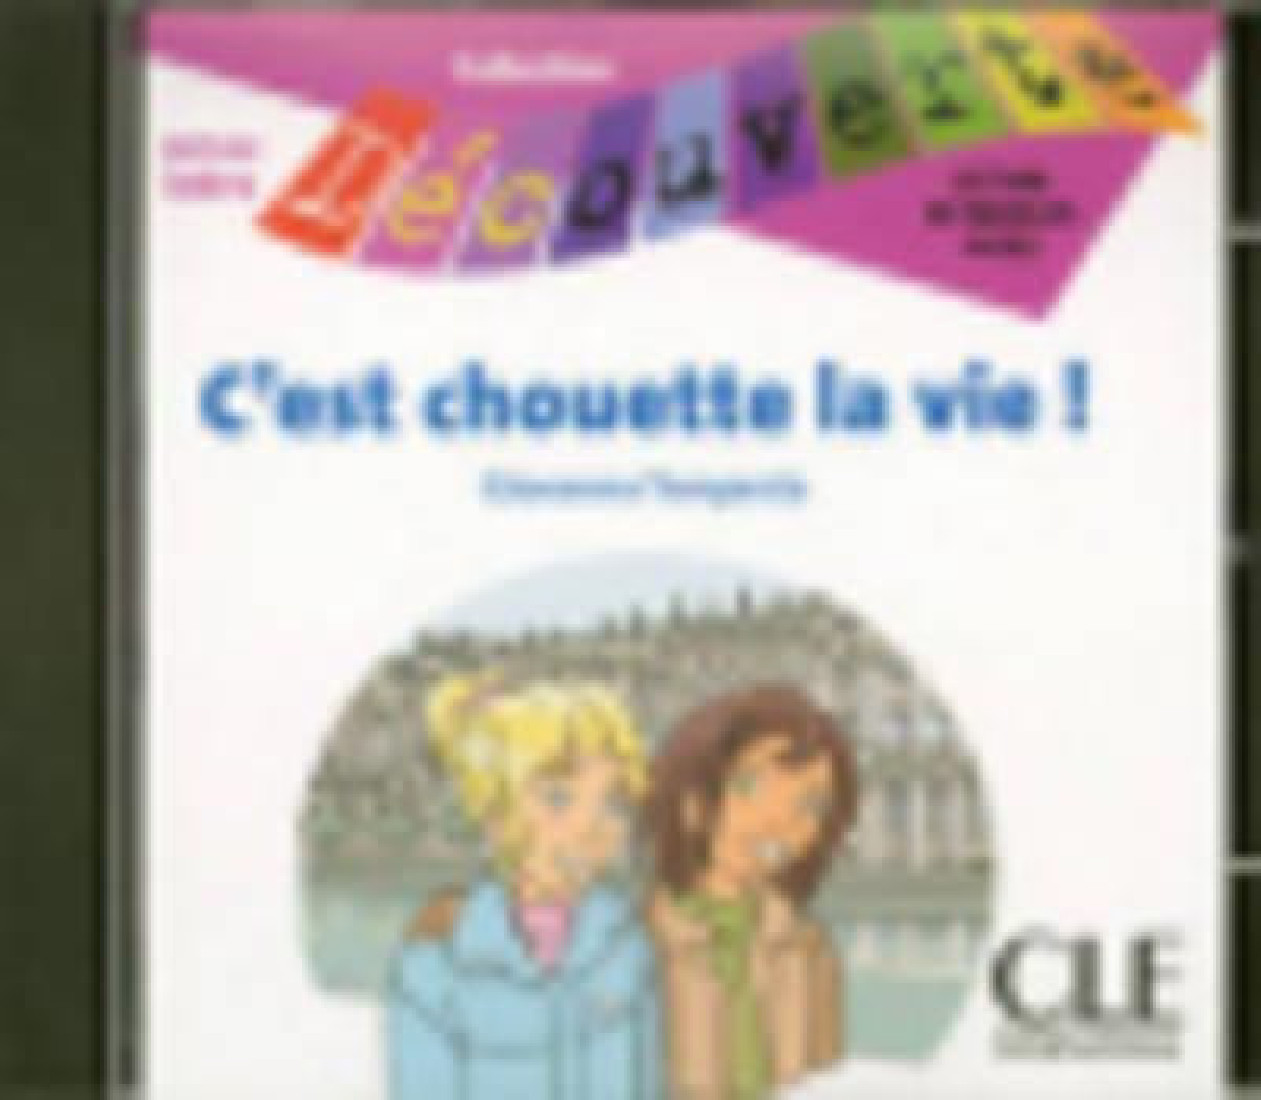 Collection Decouv. 1: CEST CHOUETTE LA VIE CD INDIVIDUEL